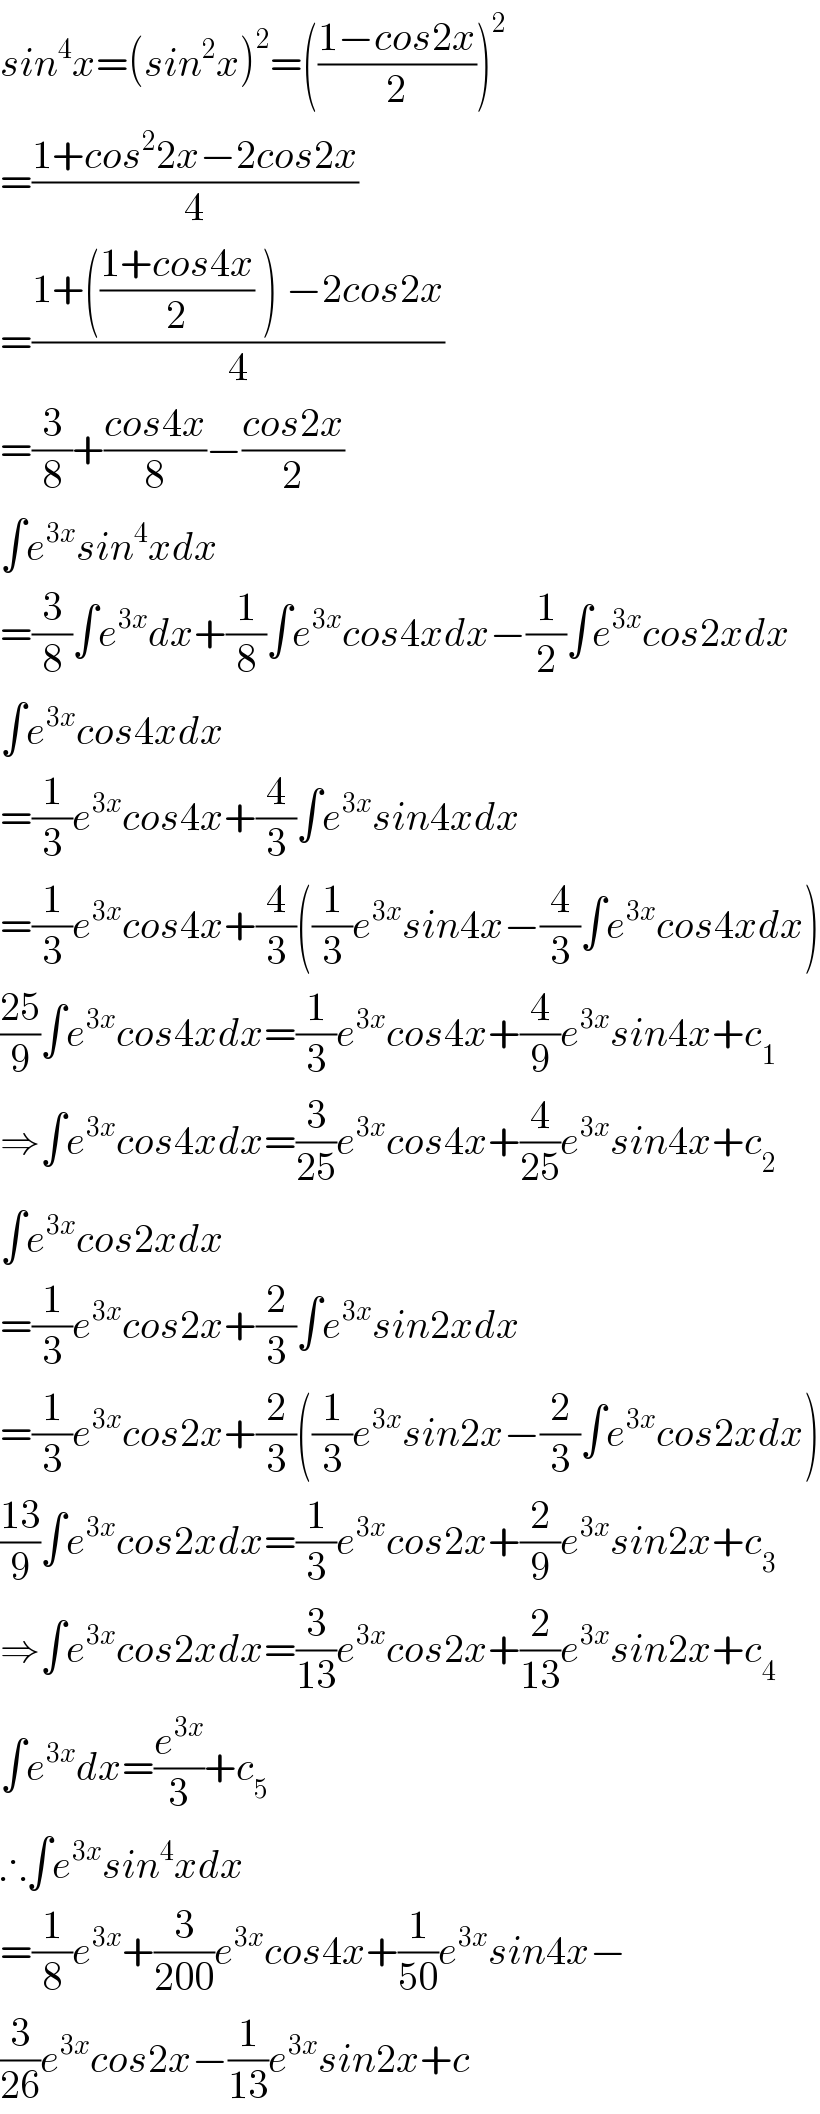 sin^4 x=(sin^2 x)^2 =(((1−cos2x)/2))^2   =((1+cos^2 2x−2cos2x)/4)  =((1+(((1+cos4x)/2) ) −2cos2x)/4)  =(3/8)+((cos4x)/8)−((cos2x)/2)  ∫e^(3x) sin^4 xdx  =(3/8)∫e^(3x) dx+(1/8)∫e^(3x) cos4xdx−(1/2)∫e^(3x) cos2xdx  ∫e^(3x) cos4xdx  =(1/3)e^(3x) cos4x+(4/3)∫e^(3x) sin4xdx  =(1/3)e^(3x) cos4x+(4/3)((1/3)e^(3x) sin4x−(4/3)∫e^(3x) cos4xdx)  ((25)/9)∫e^(3x) cos4xdx=(1/3)e^(3x) cos4x+(4/9)e^(3x) sin4x+c_1   ⇒∫e^(3x) cos4xdx=(3/(25))e^(3x) cos4x+(4/(25))e^(3x) sin4x+c_2   ∫e^(3x) cos2xdx  =(1/3)e^(3x) cos2x+(2/3)∫e^(3x) sin2xdx  =(1/3)e^(3x) cos2x+(2/3)((1/3)e^(3x) sin2x−(2/3)∫e^(3x) cos2xdx)  ((13)/9)∫e^(3x) cos2xdx=(1/3)e^(3x) cos2x+(2/9)e^(3x) sin2x+c_3   ⇒∫e^(3x) cos2xdx=(3/(13))e^(3x) cos2x+(2/(13))e^(3x) sin2x+c_4   ∫e^(3x) dx=(e^(3x) /3)+c_5   ∴∫e^(3x) sin^4 xdx  =(1/8)e^(3x) +(3/(200))e^(3x) cos4x+(1/(50))e^(3x) sin4x−  (3/(26))e^(3x) cos2x−(1/(13))e^(3x) sin2x+c  